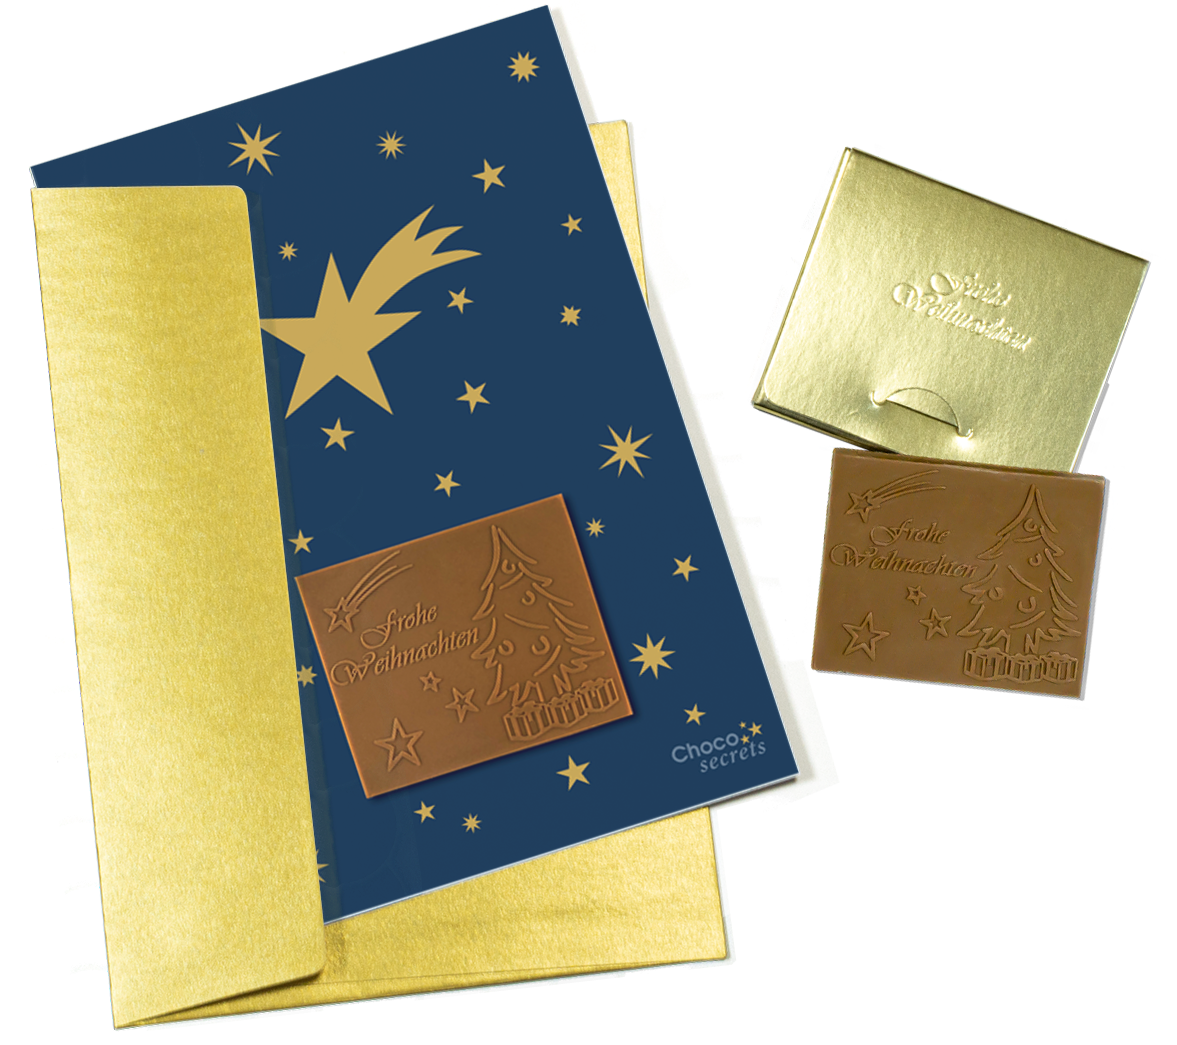 Weihnachtskarten mit Schokoladenprägung in Goldbox, 5er-Set, Kartendesign: dunkelblauer Himmel mit goldenen Sternen, Schokoladenprägung: „Frohe Weihnachten“, Umschlag in Gold